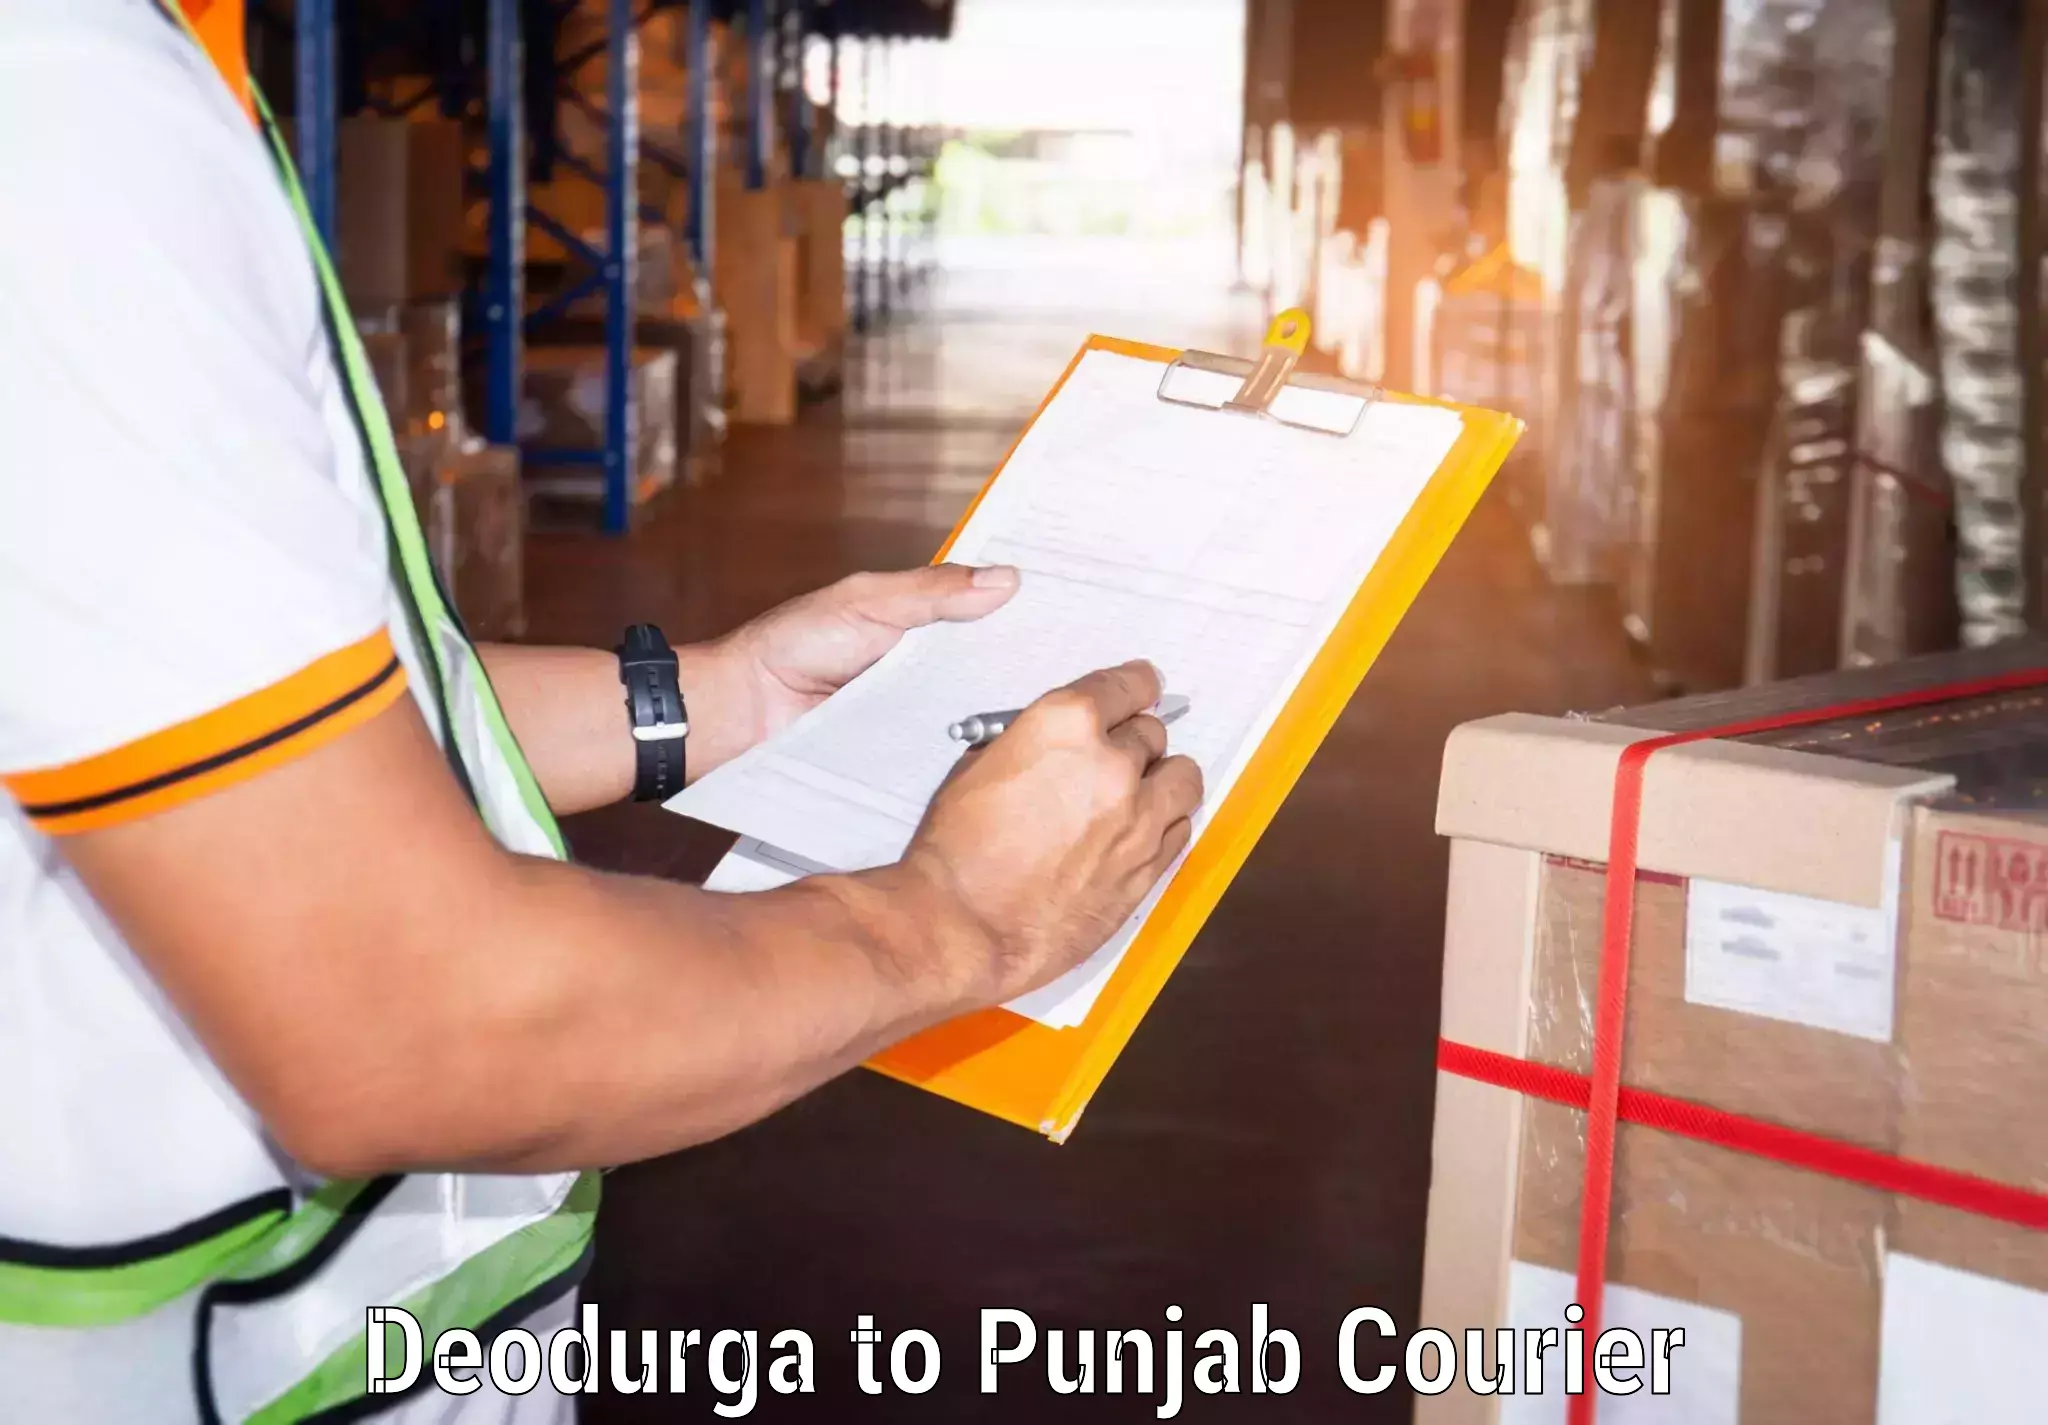 Global shipping networks Deodurga to Kapurthala